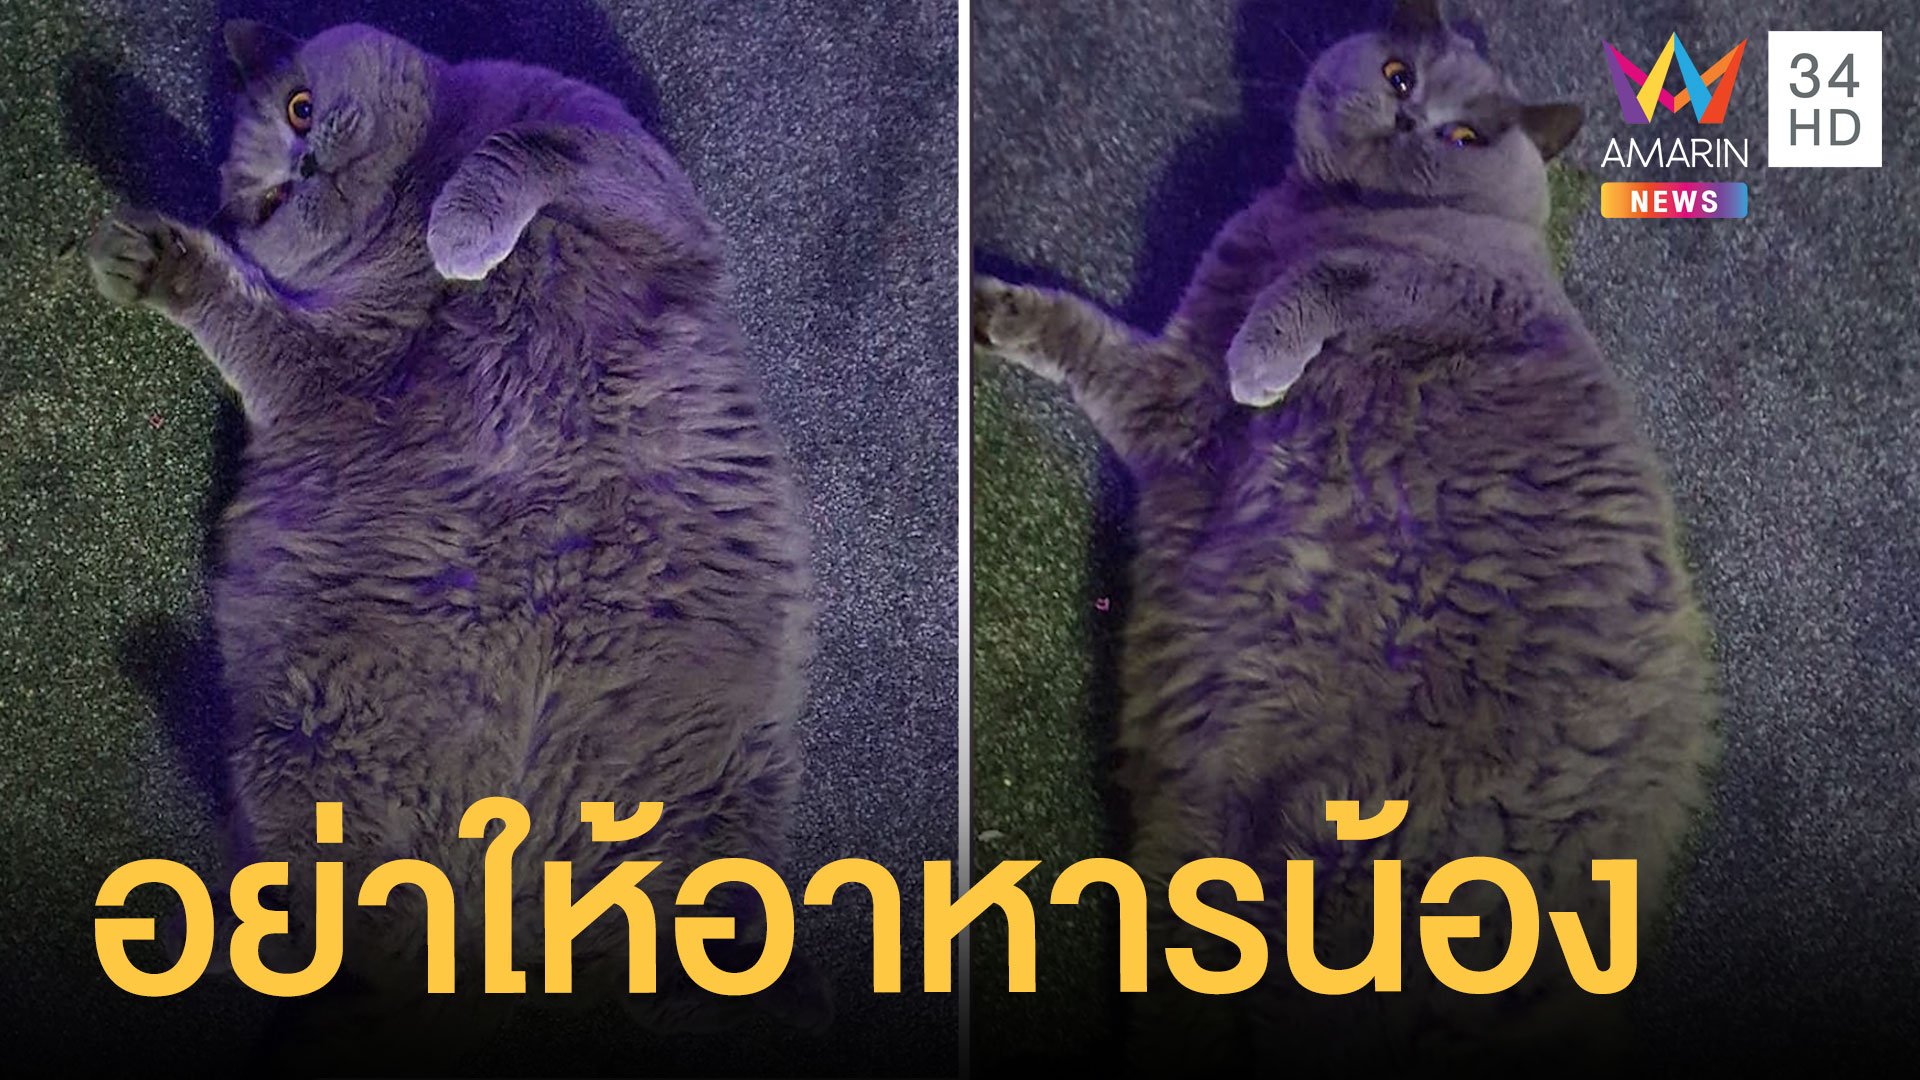 เจ้าของแมวขอเพื่อนบ้านหยุดให้อาหาร เพราะมันอ้วน 8 กิโลแล้ว | ข่าวอรุณอมรินทร์ | 12 พ.ย. 63 | AMARIN TVHD34